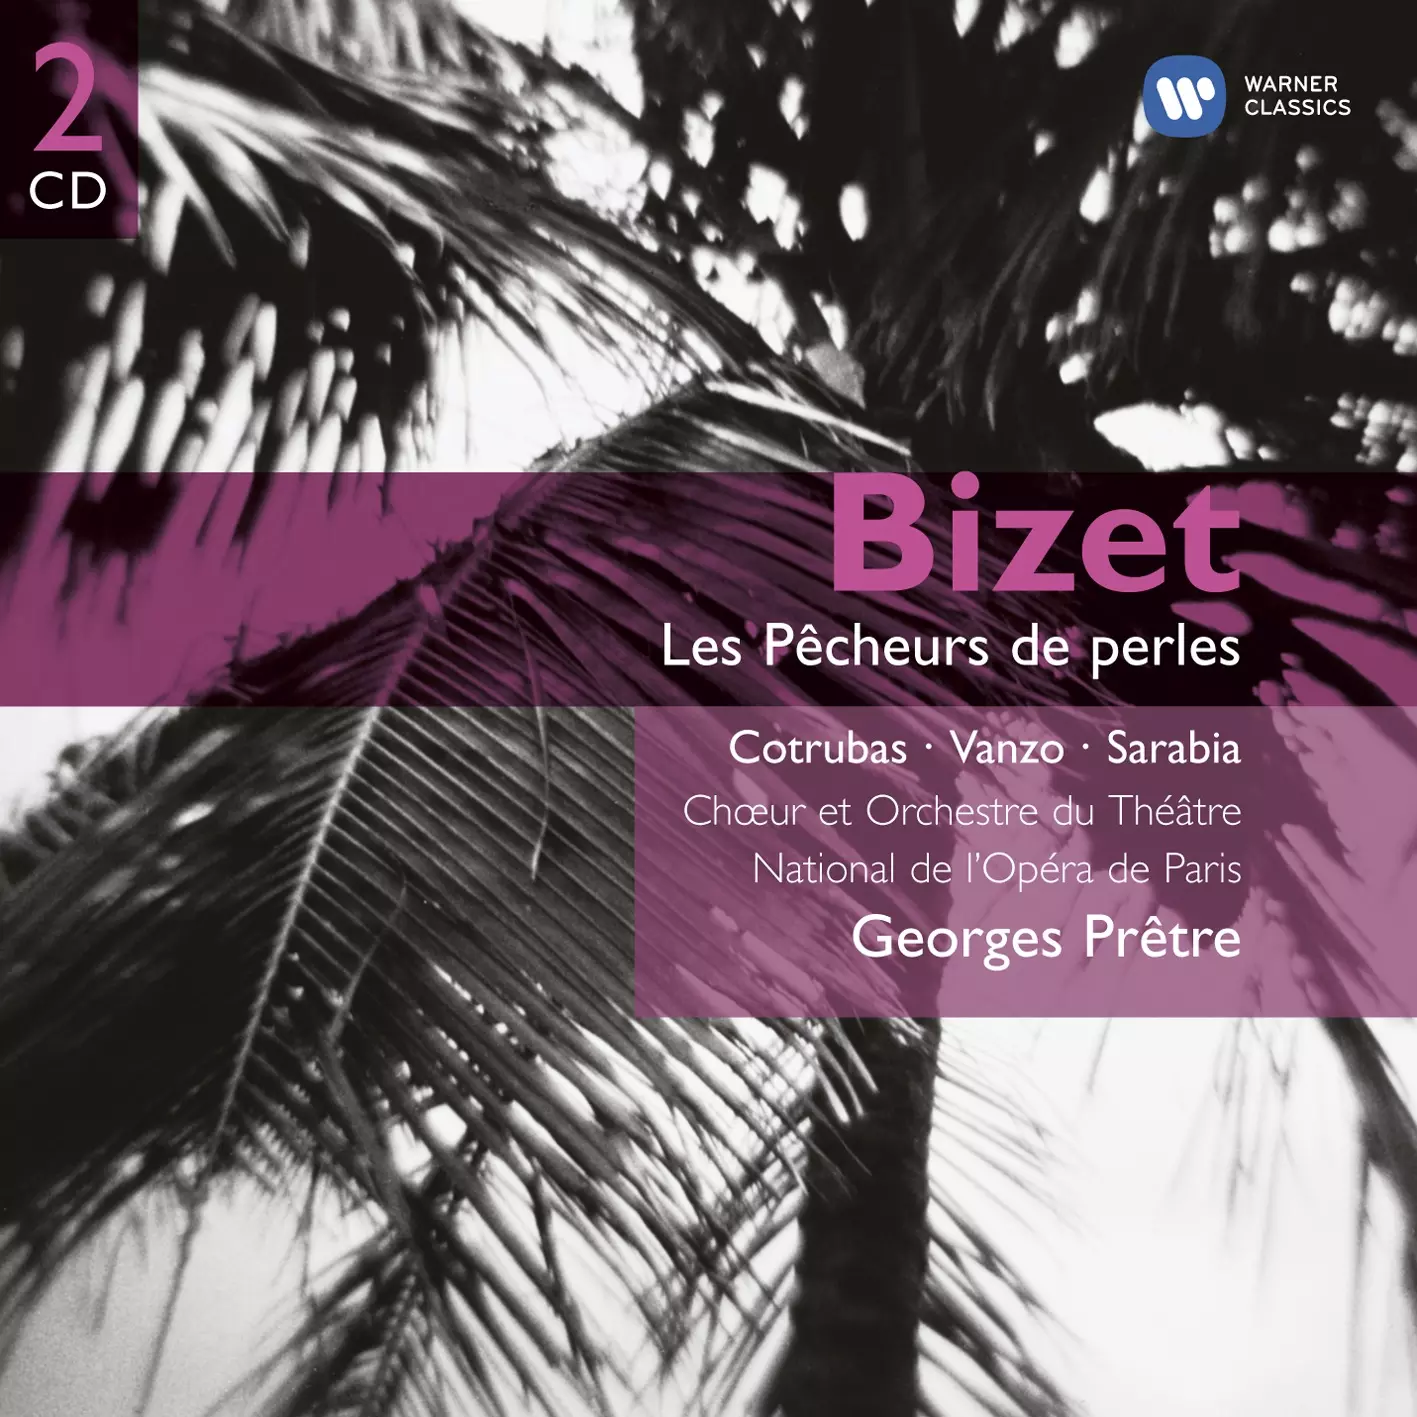 Bizet: Les Pêcheurs de perles